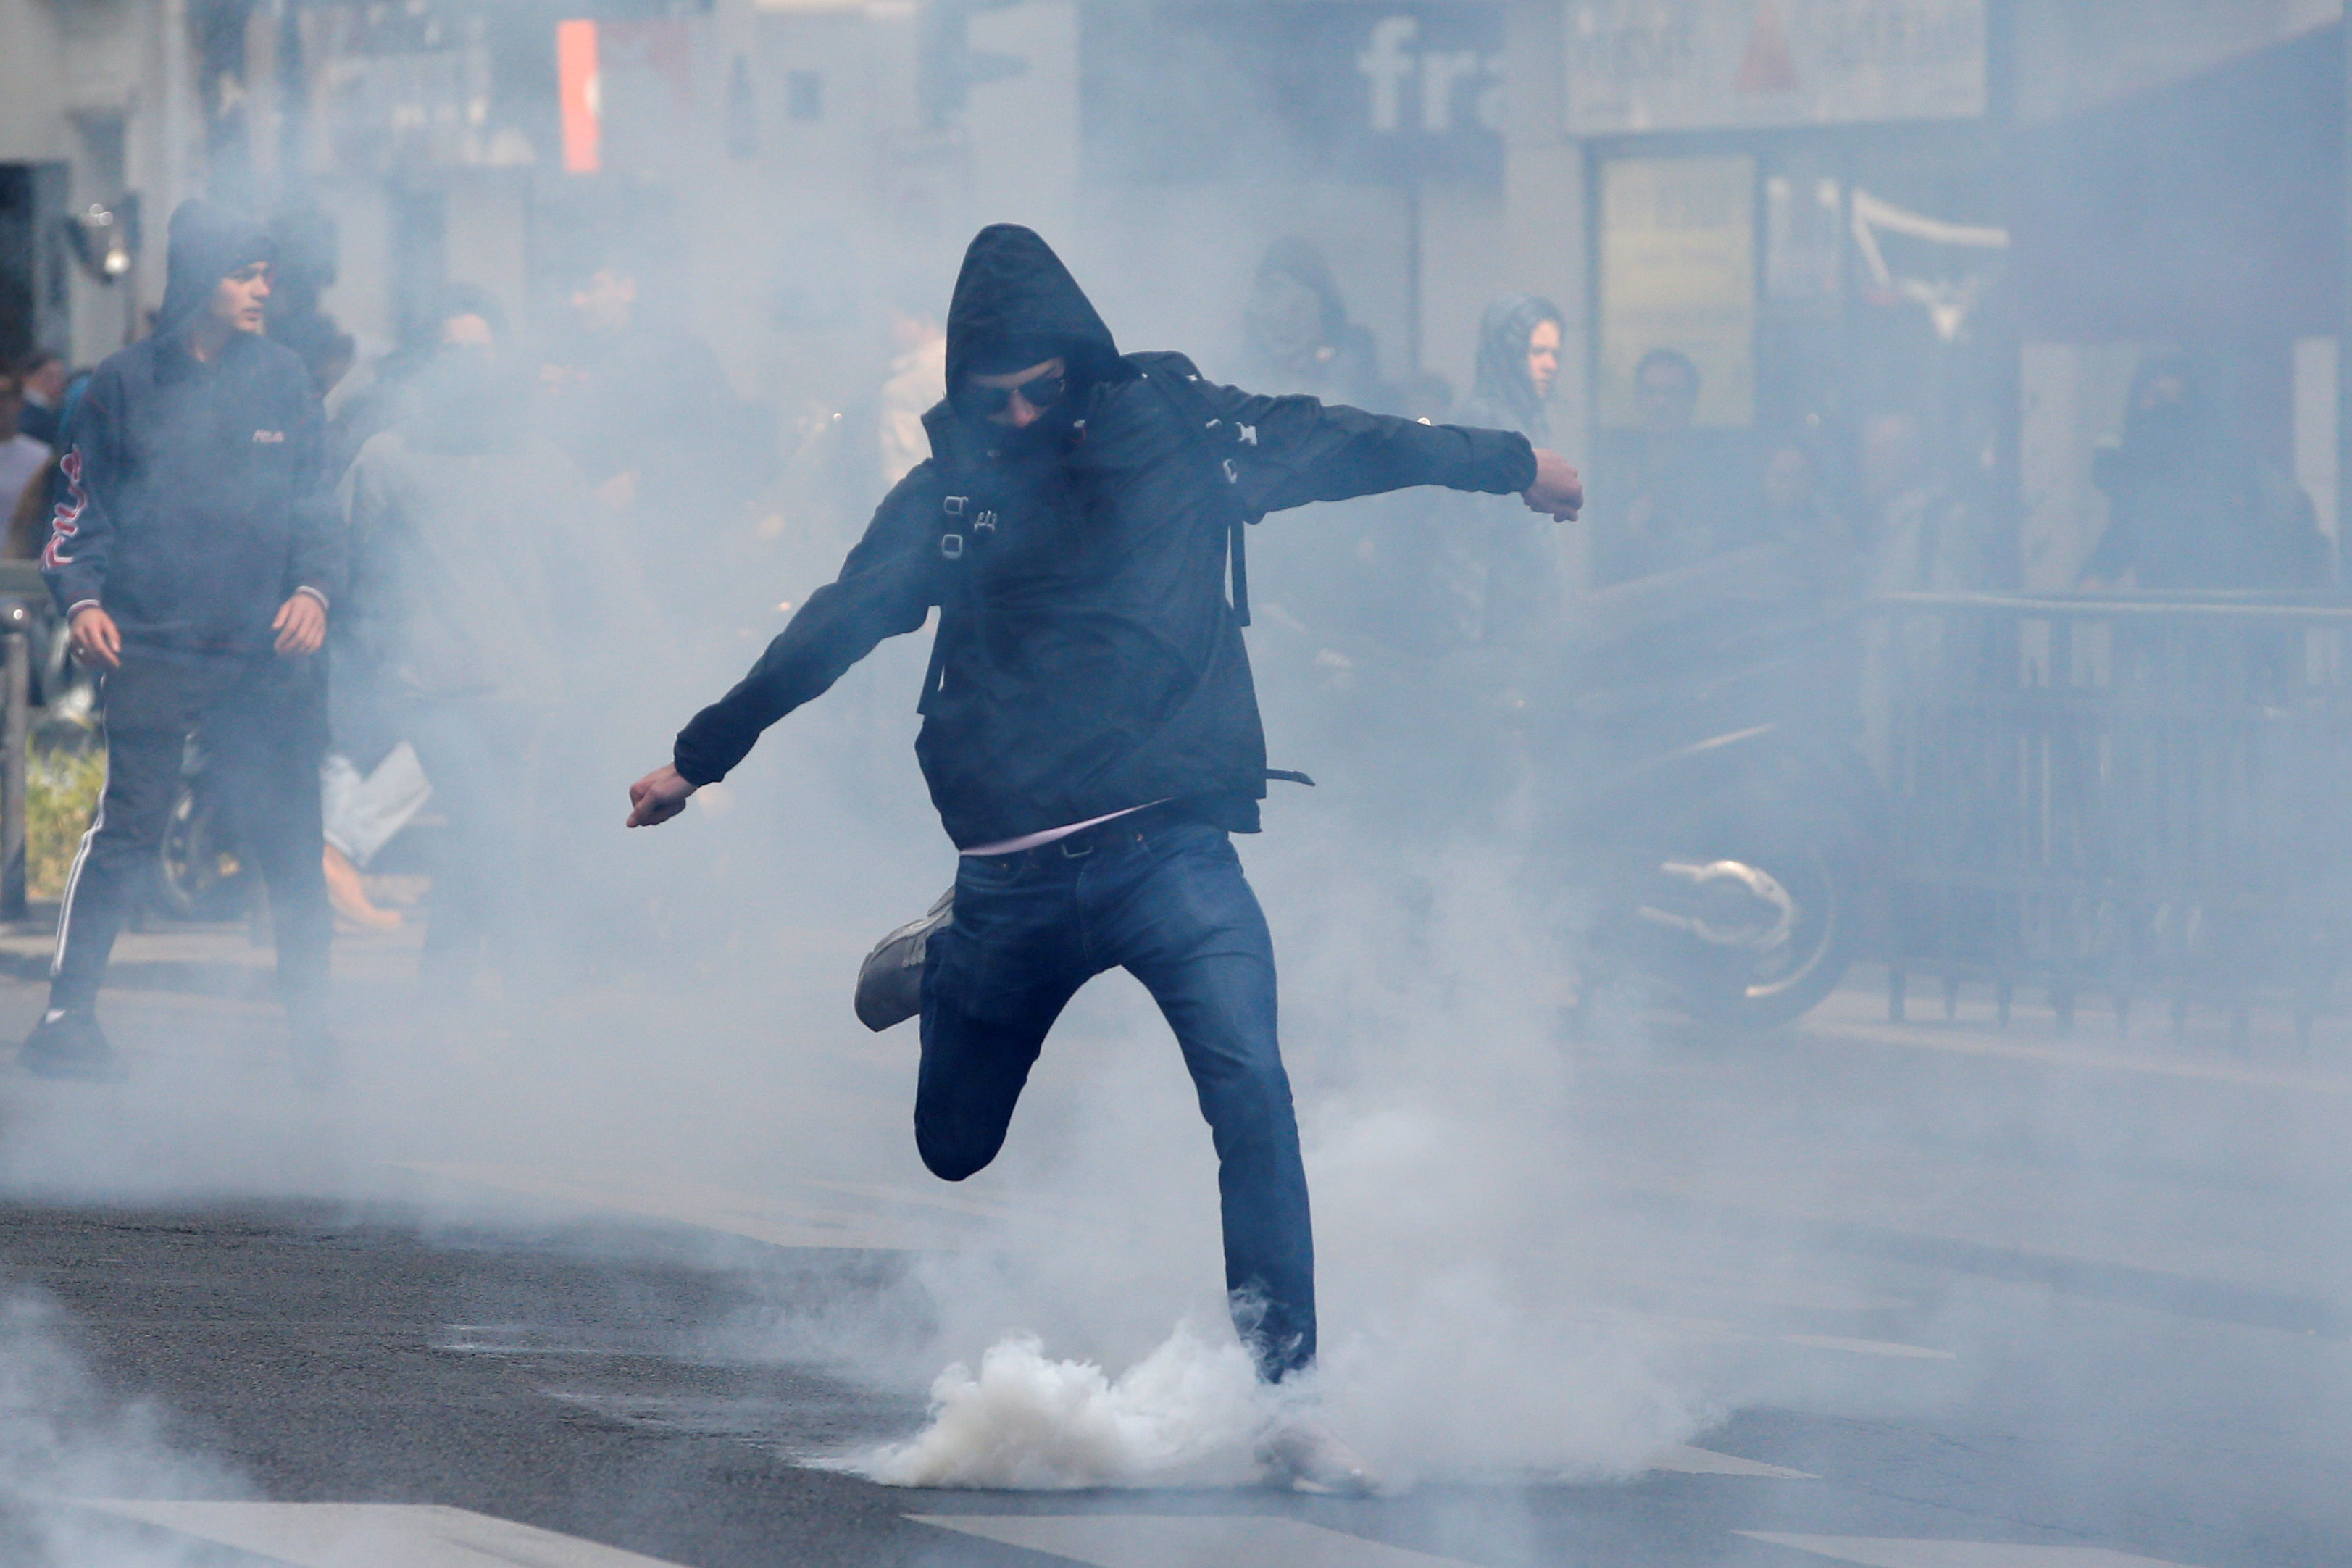 متظاهر فرنسى يركل قنبلة غاز خلال اشتباكات مع الشرطةمظاهرات ضد الجبهة الوطنية اليمنية المتطرفة فى فرنسا